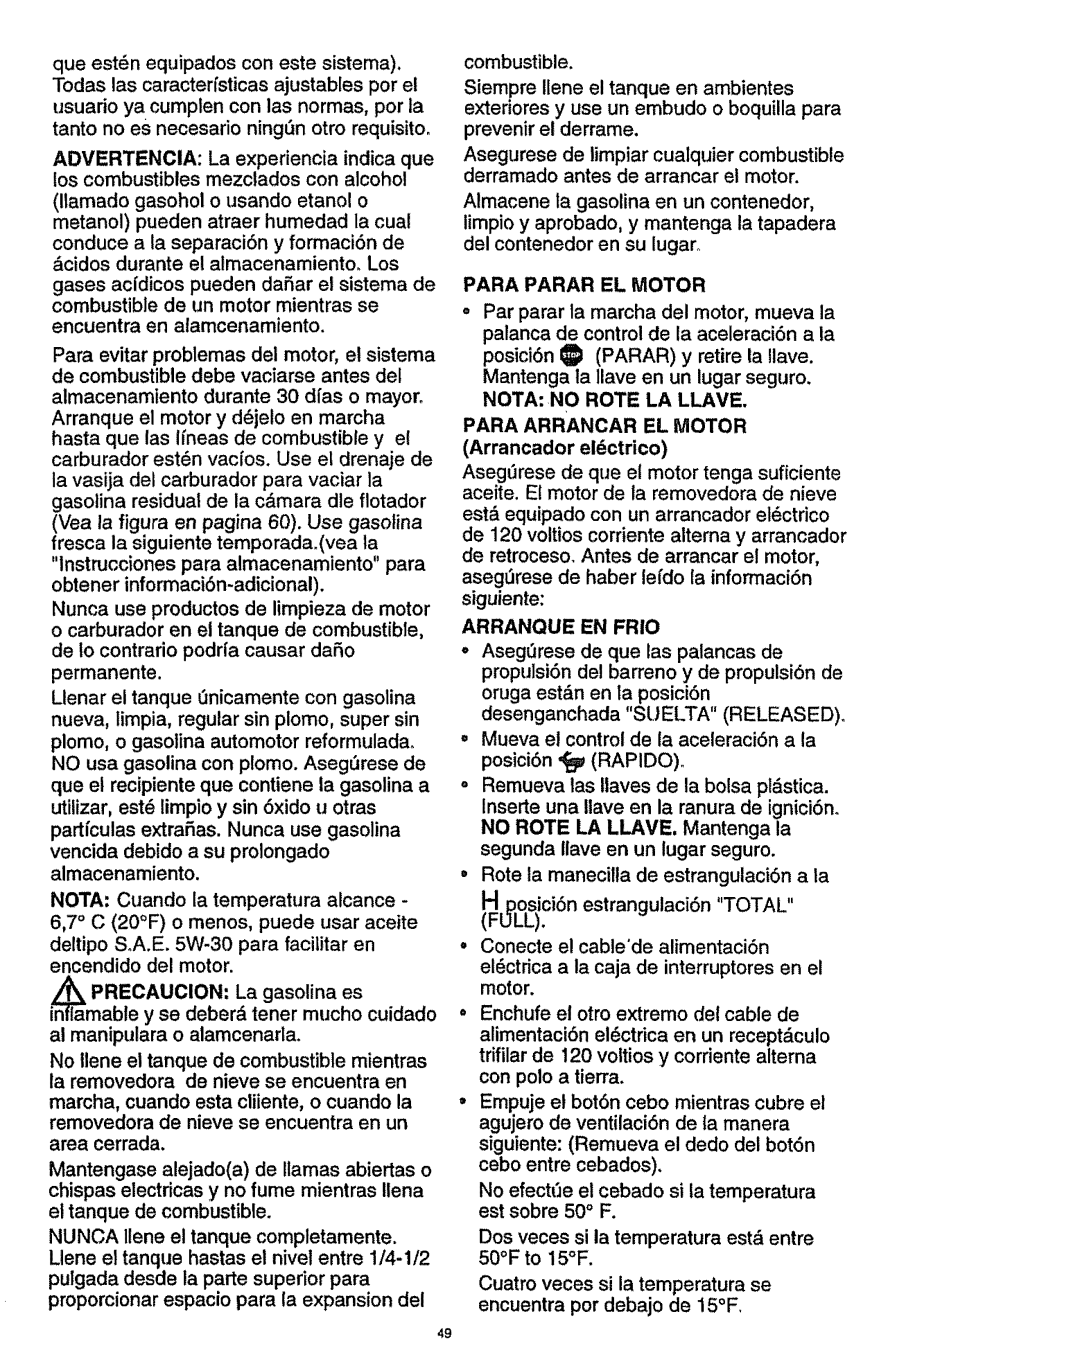 Craftsman 536.886141 manual Para Parar EL Motor, NOTA,NO Rote LA Llave, Para Arrancar EL Motor Arrancador elctrico 